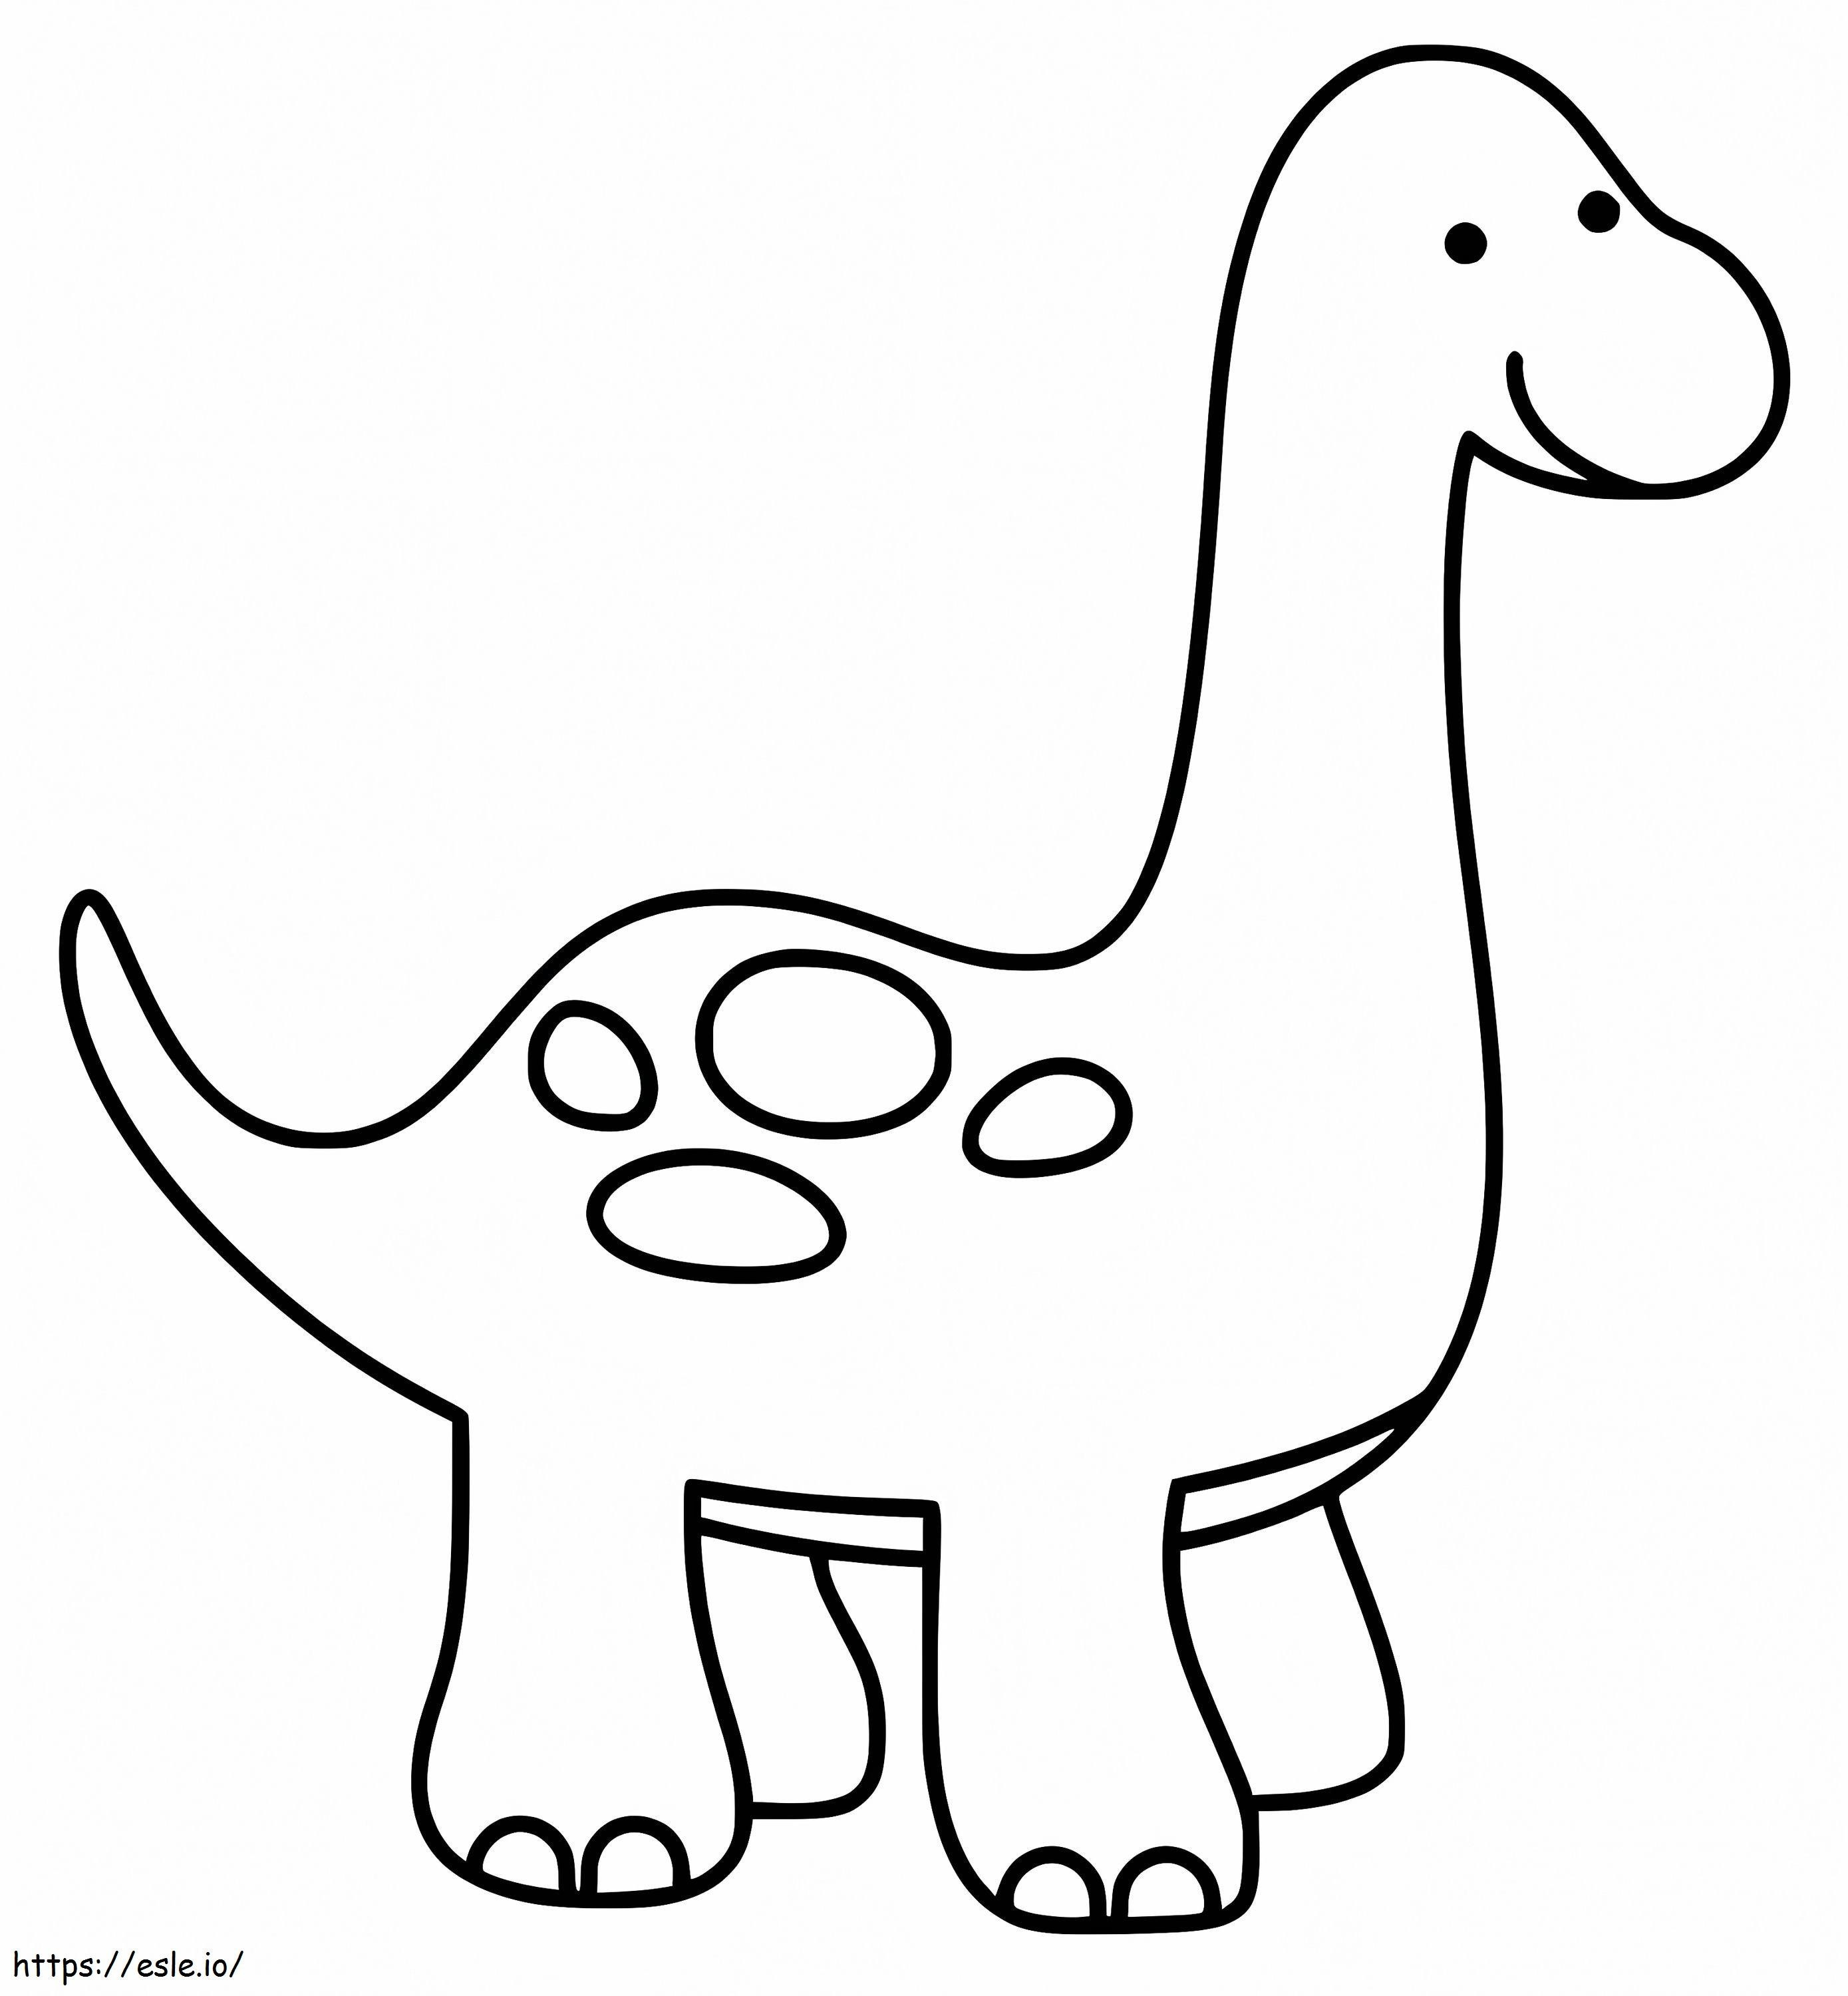 Un simpatico dinosauro da colorare